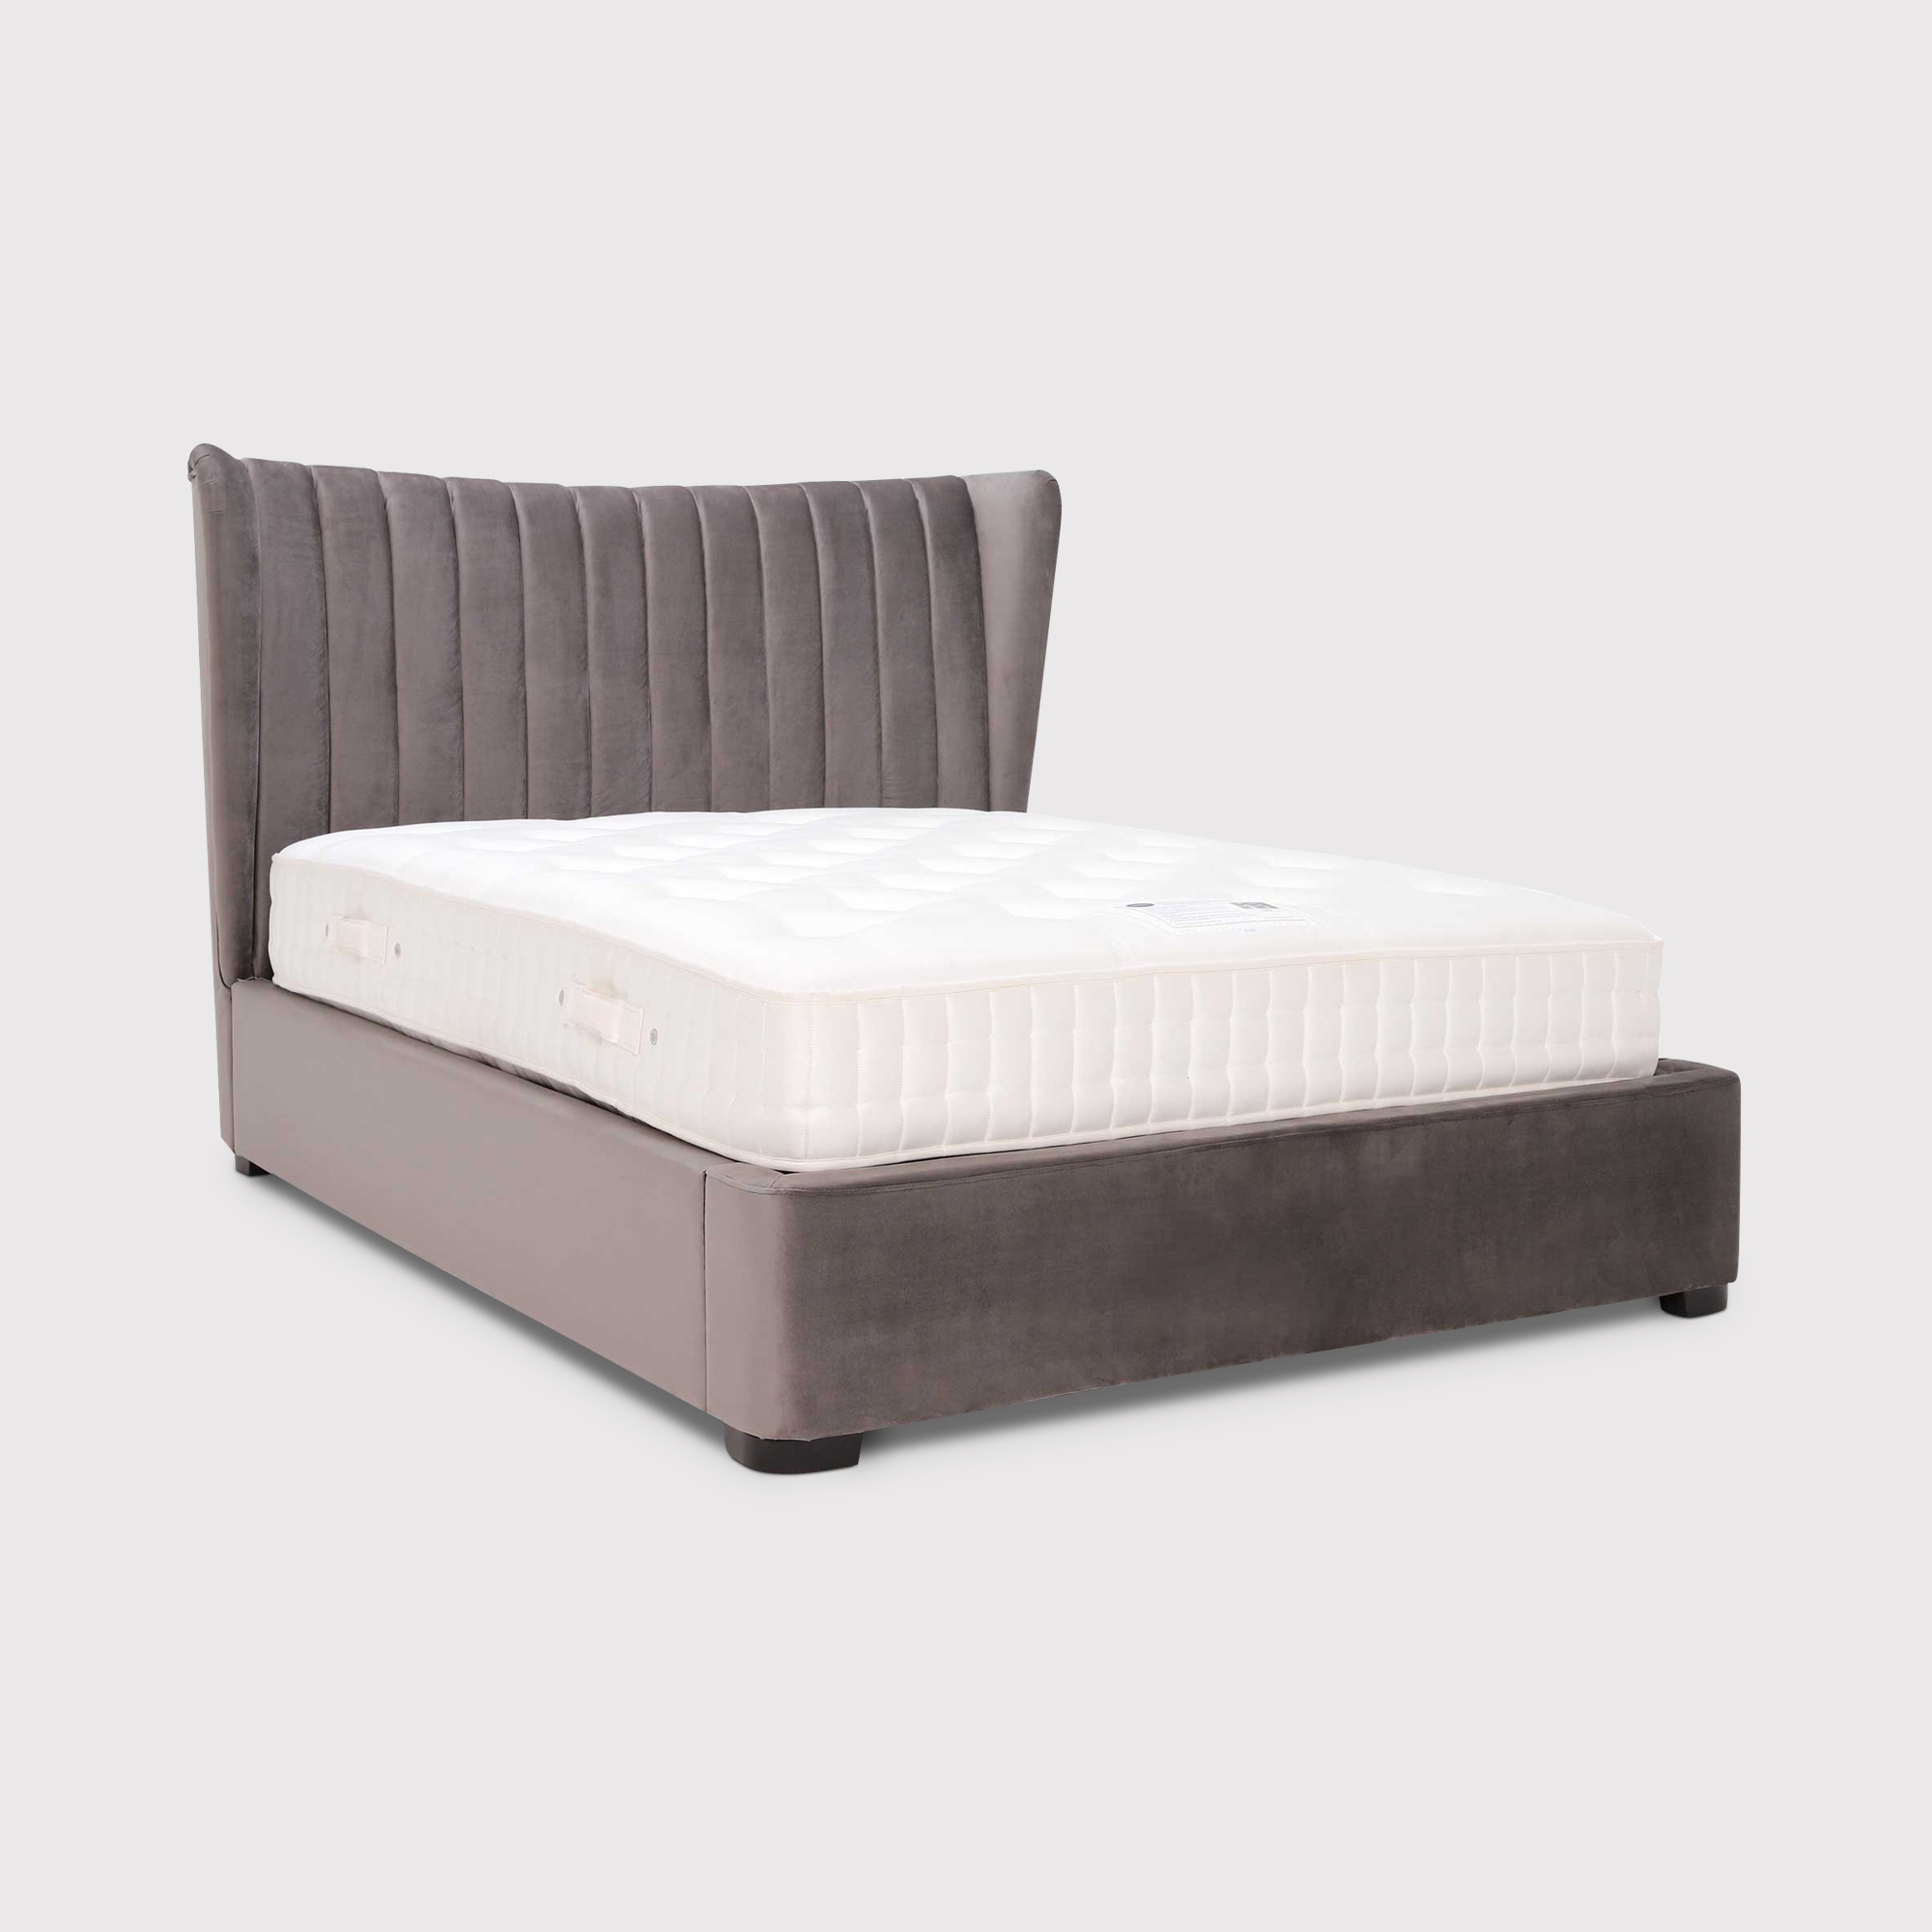 Cordette 150cm Bed With Lift Up, Grey Velvet | King | Barker & Stonehouse